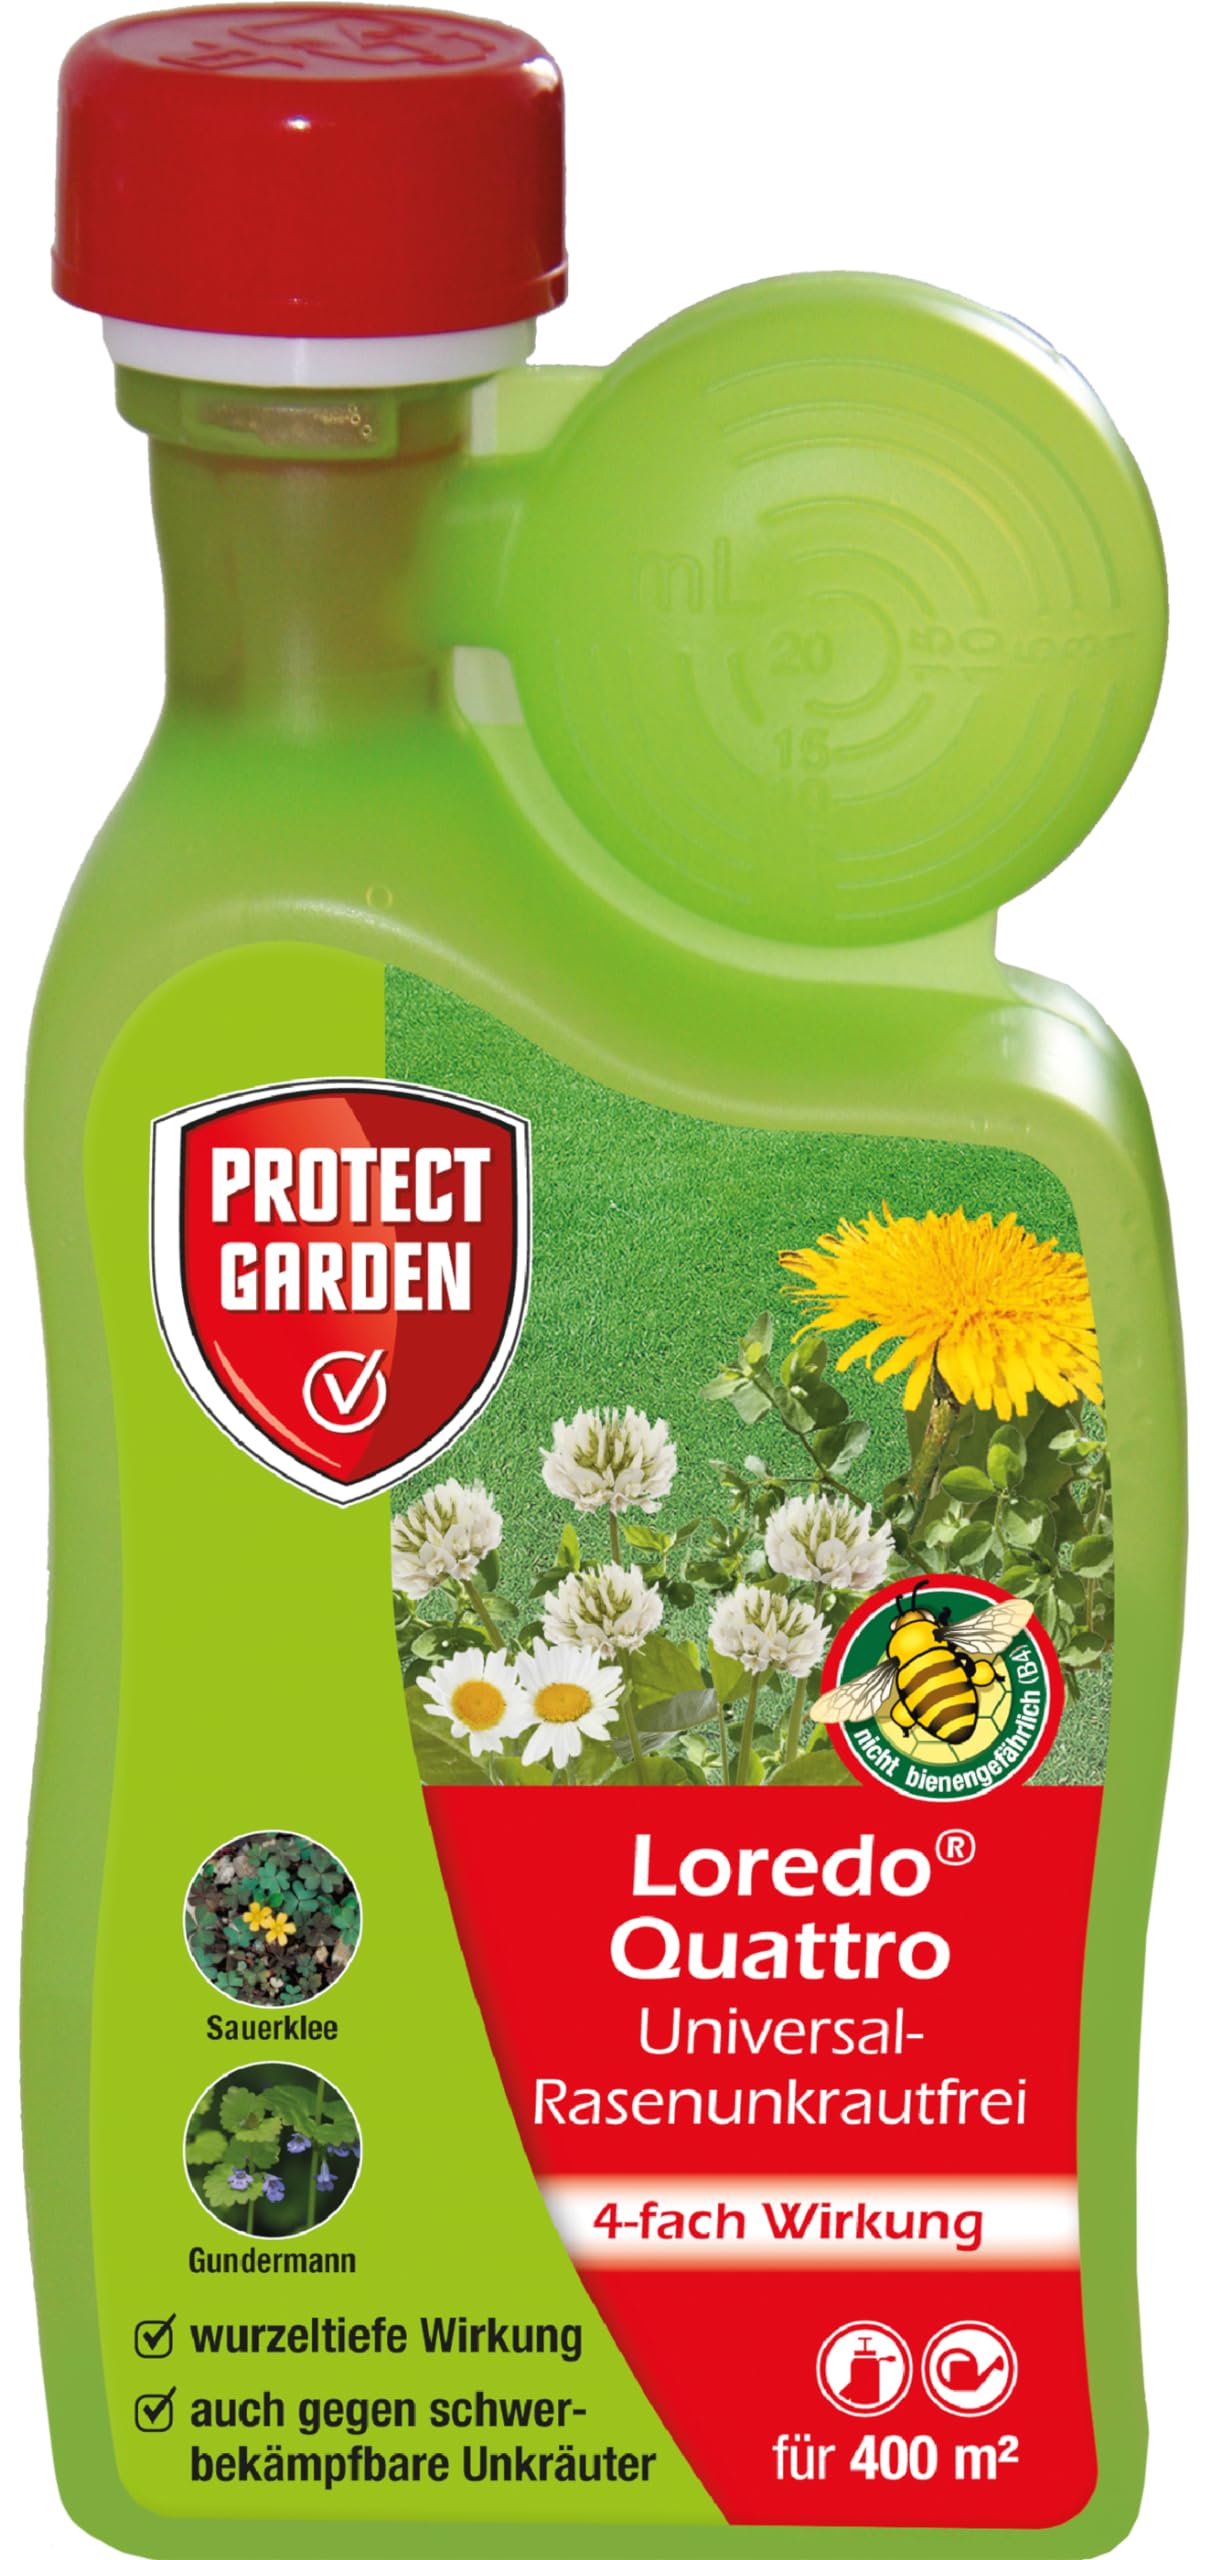 PROTECT GARDEN Universal-Rasenunkrautfrei Loredo Quattro Rasen-Unkrautvernichter gegen hartnäckige Unkräuter mit 4-fach Wirkung, 250 ml